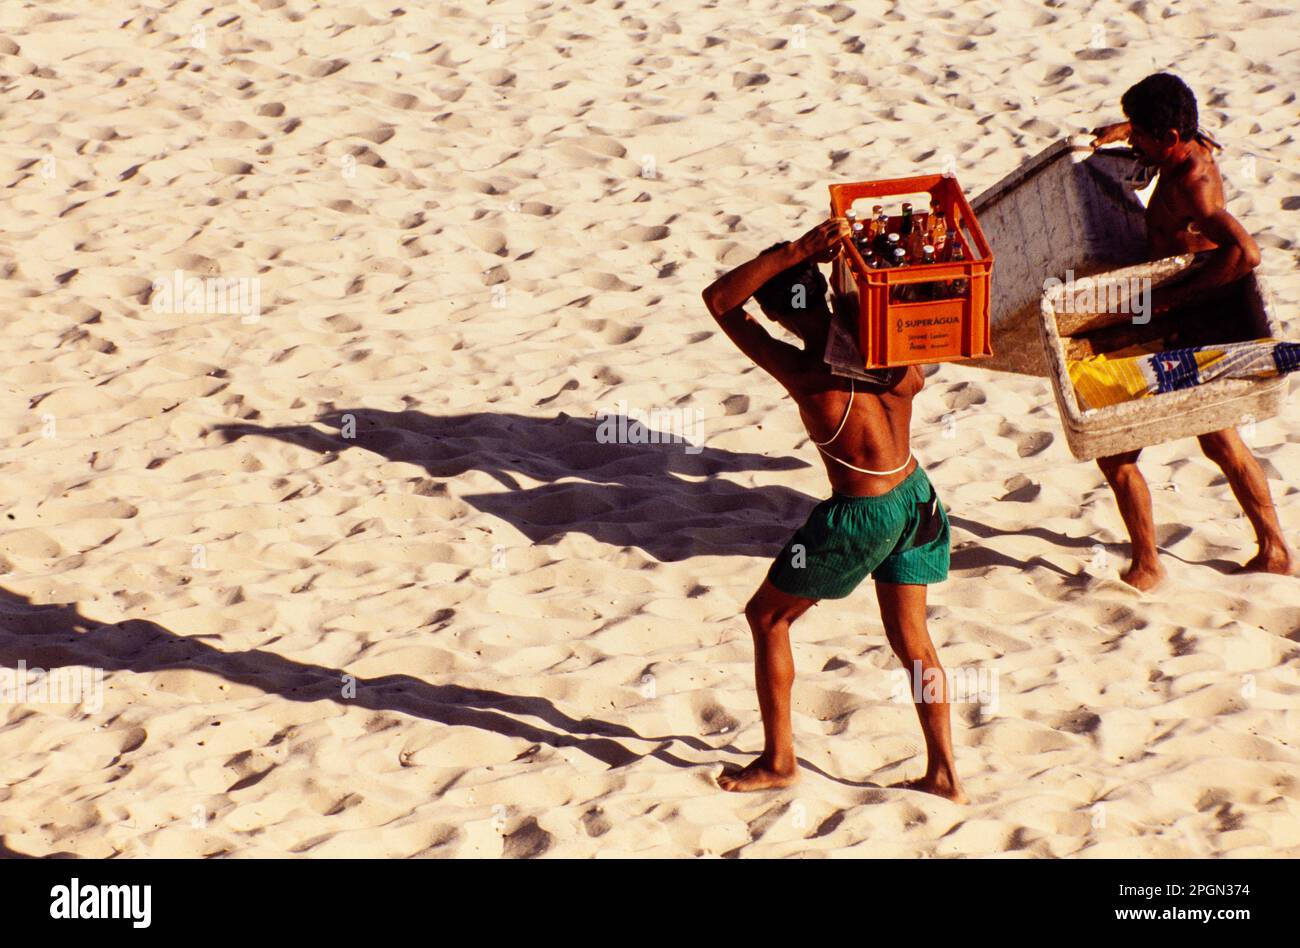 Économie informelle, les vendeurs de plage transportent des caisses à boissons à la plage de Copacabana. Rio de Janeiro, Brésil. Banque D'Images